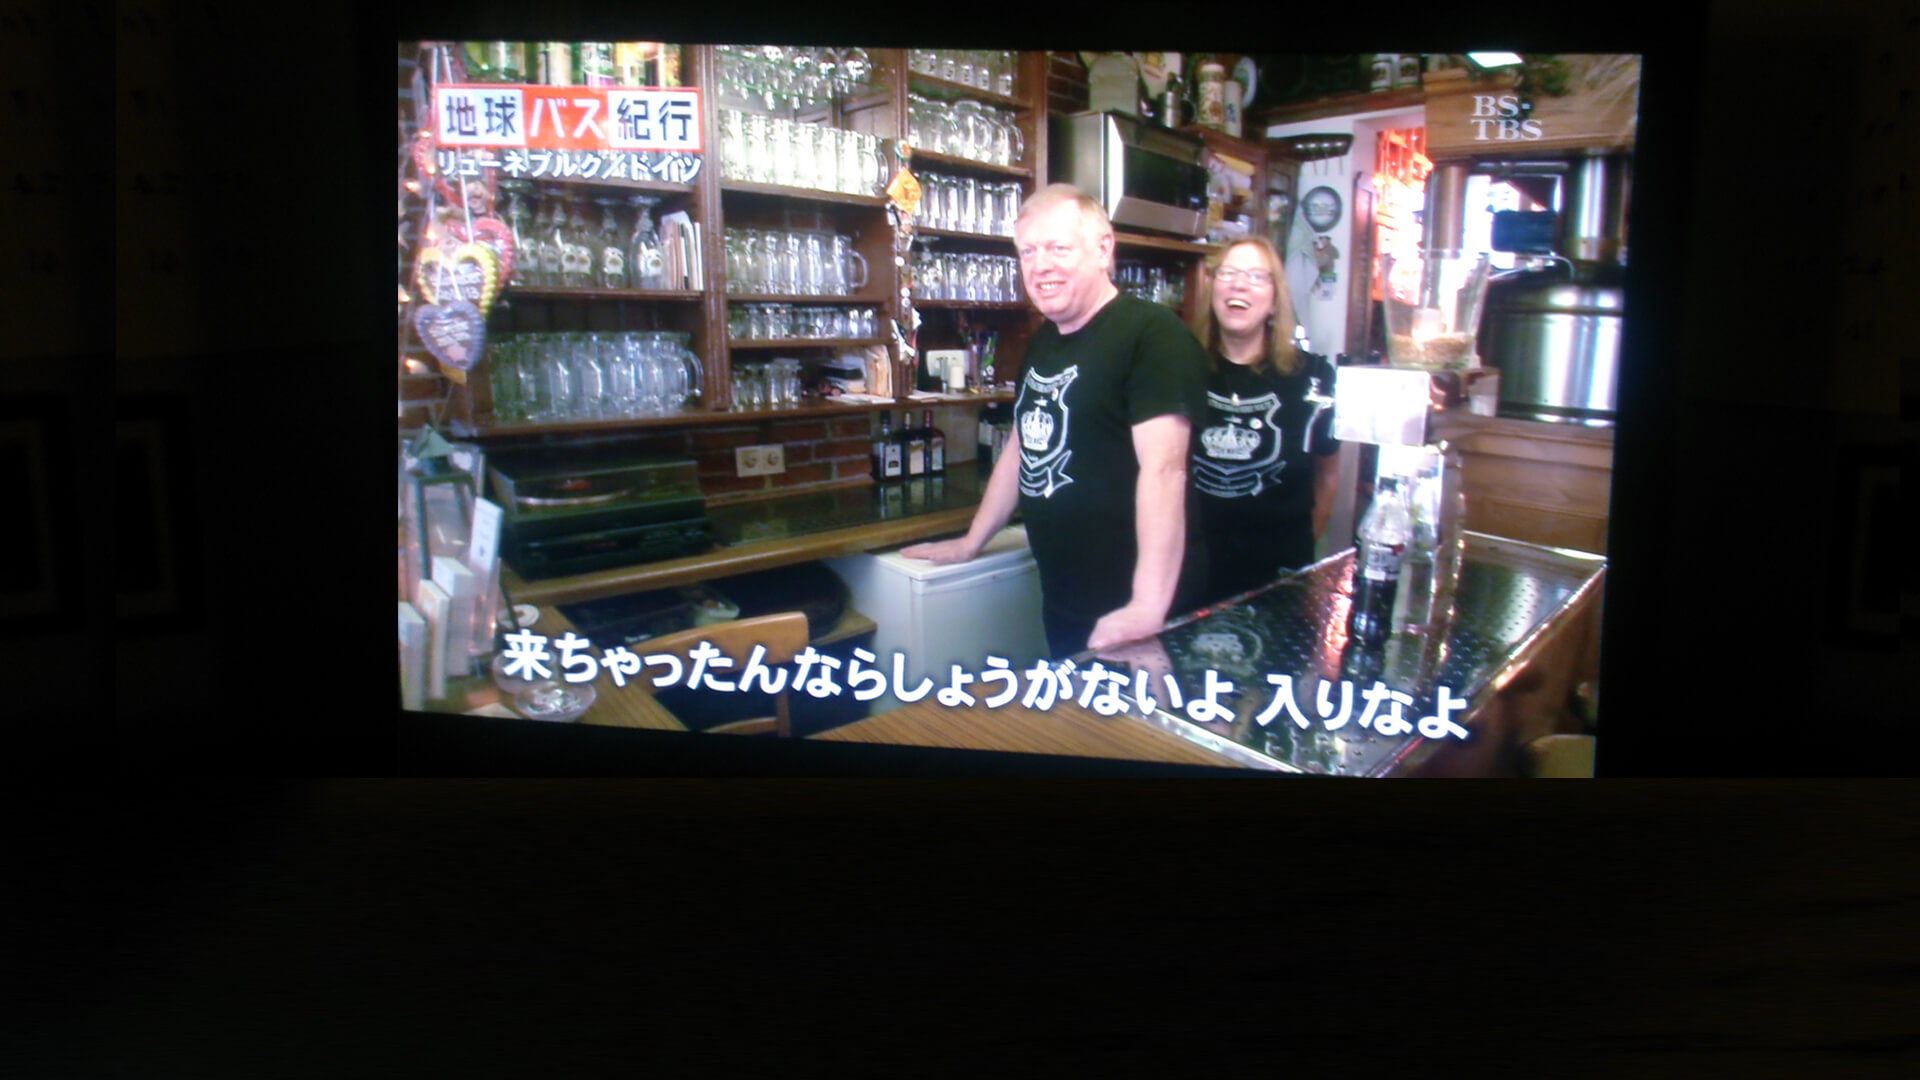 Brauhaus Nolte - Japan-TV